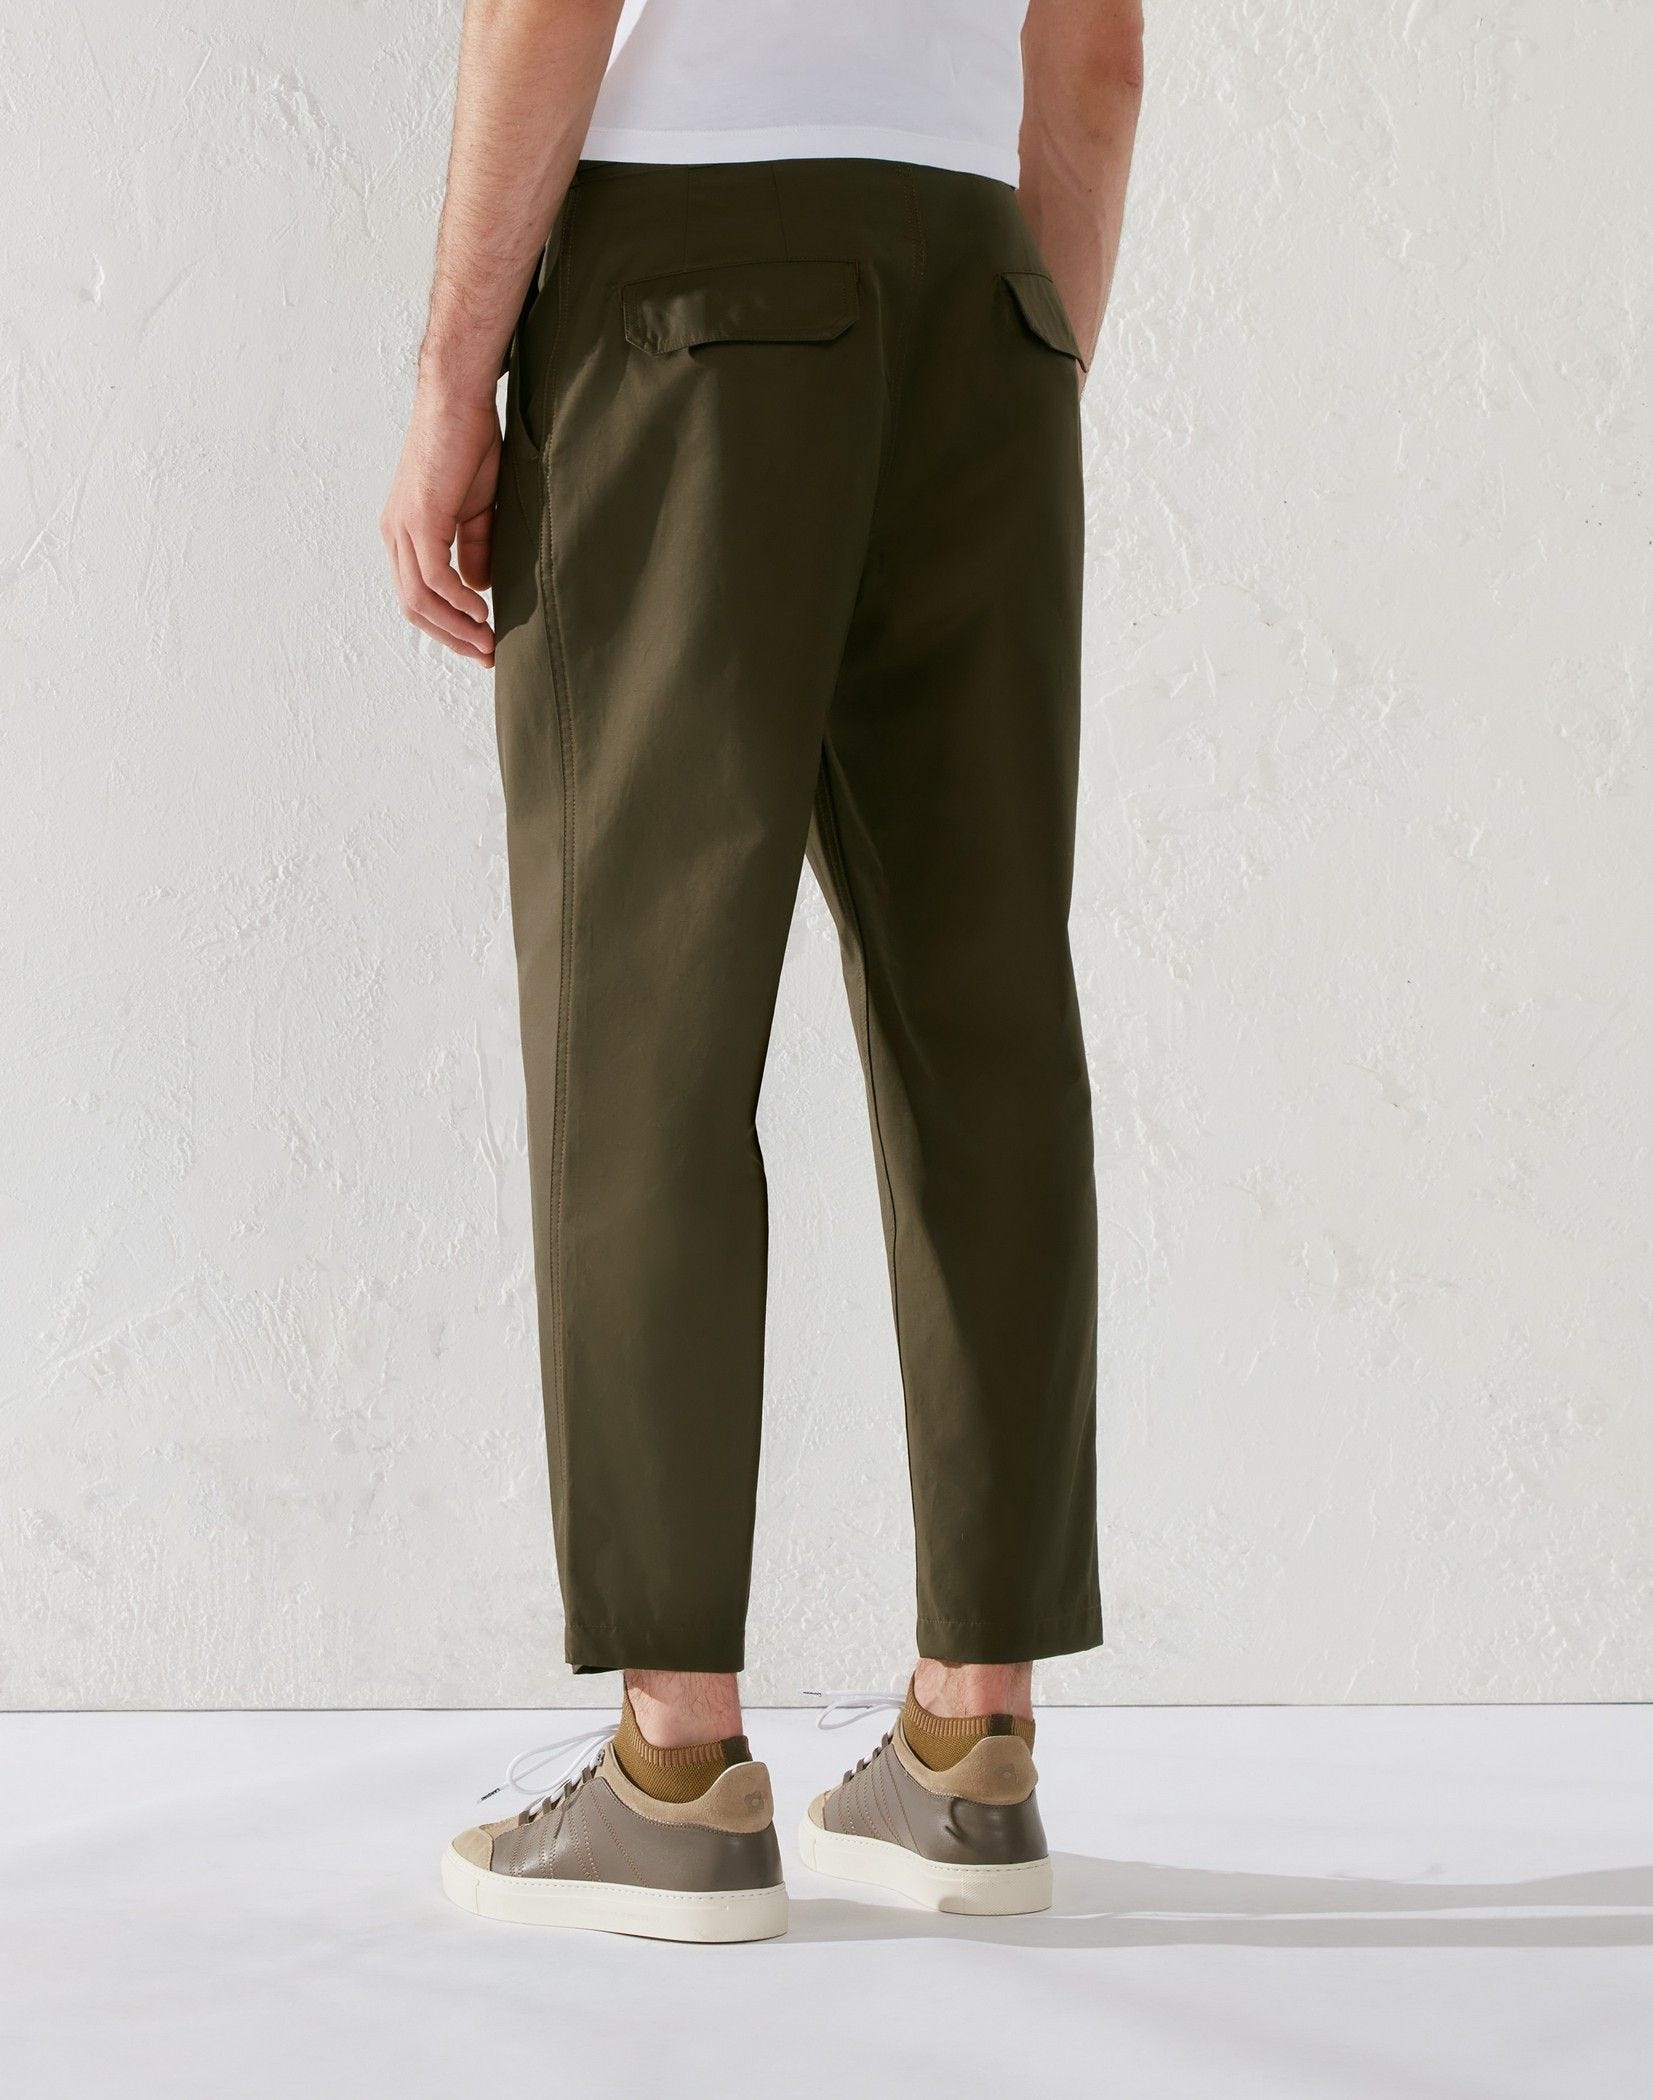 Green cotton and nylon comfort trousers - Lardini by Yosuke Aizawa